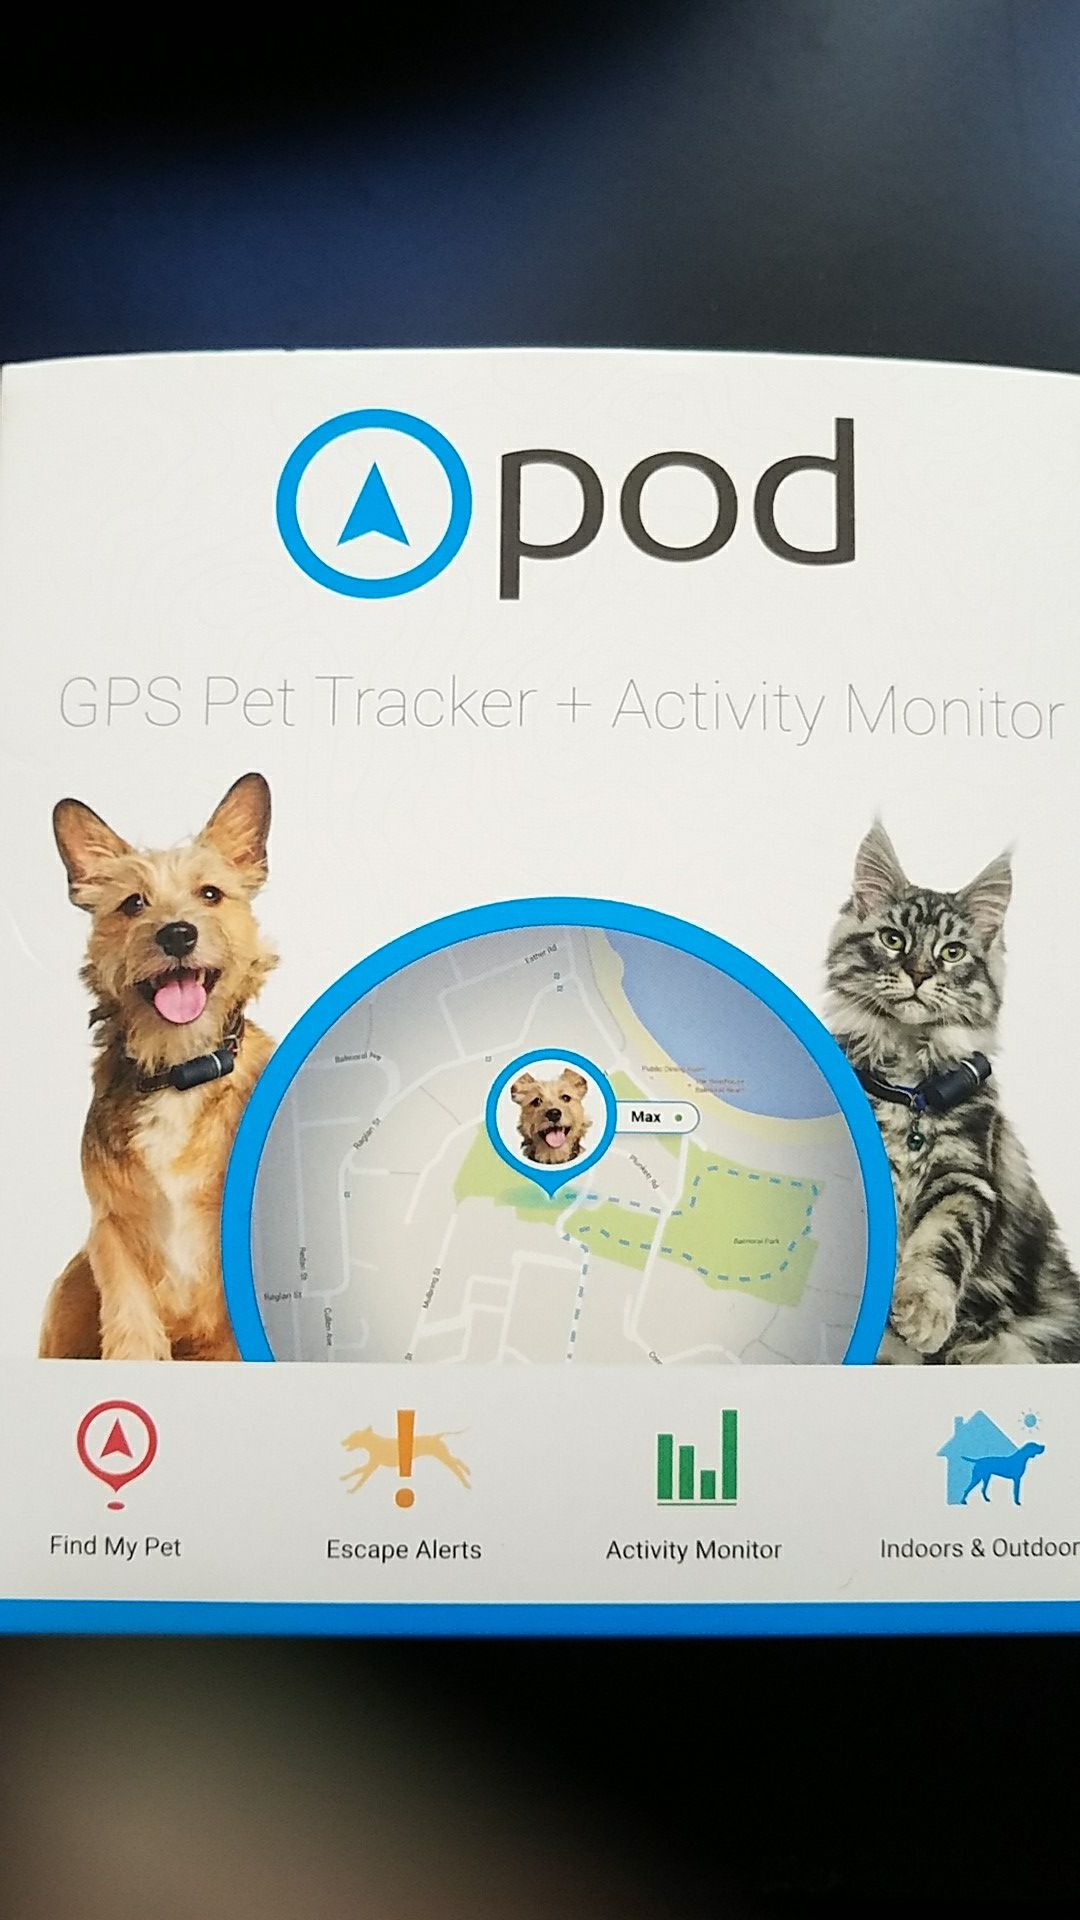 Pod GPS Pet Tracker + Activity Monitor